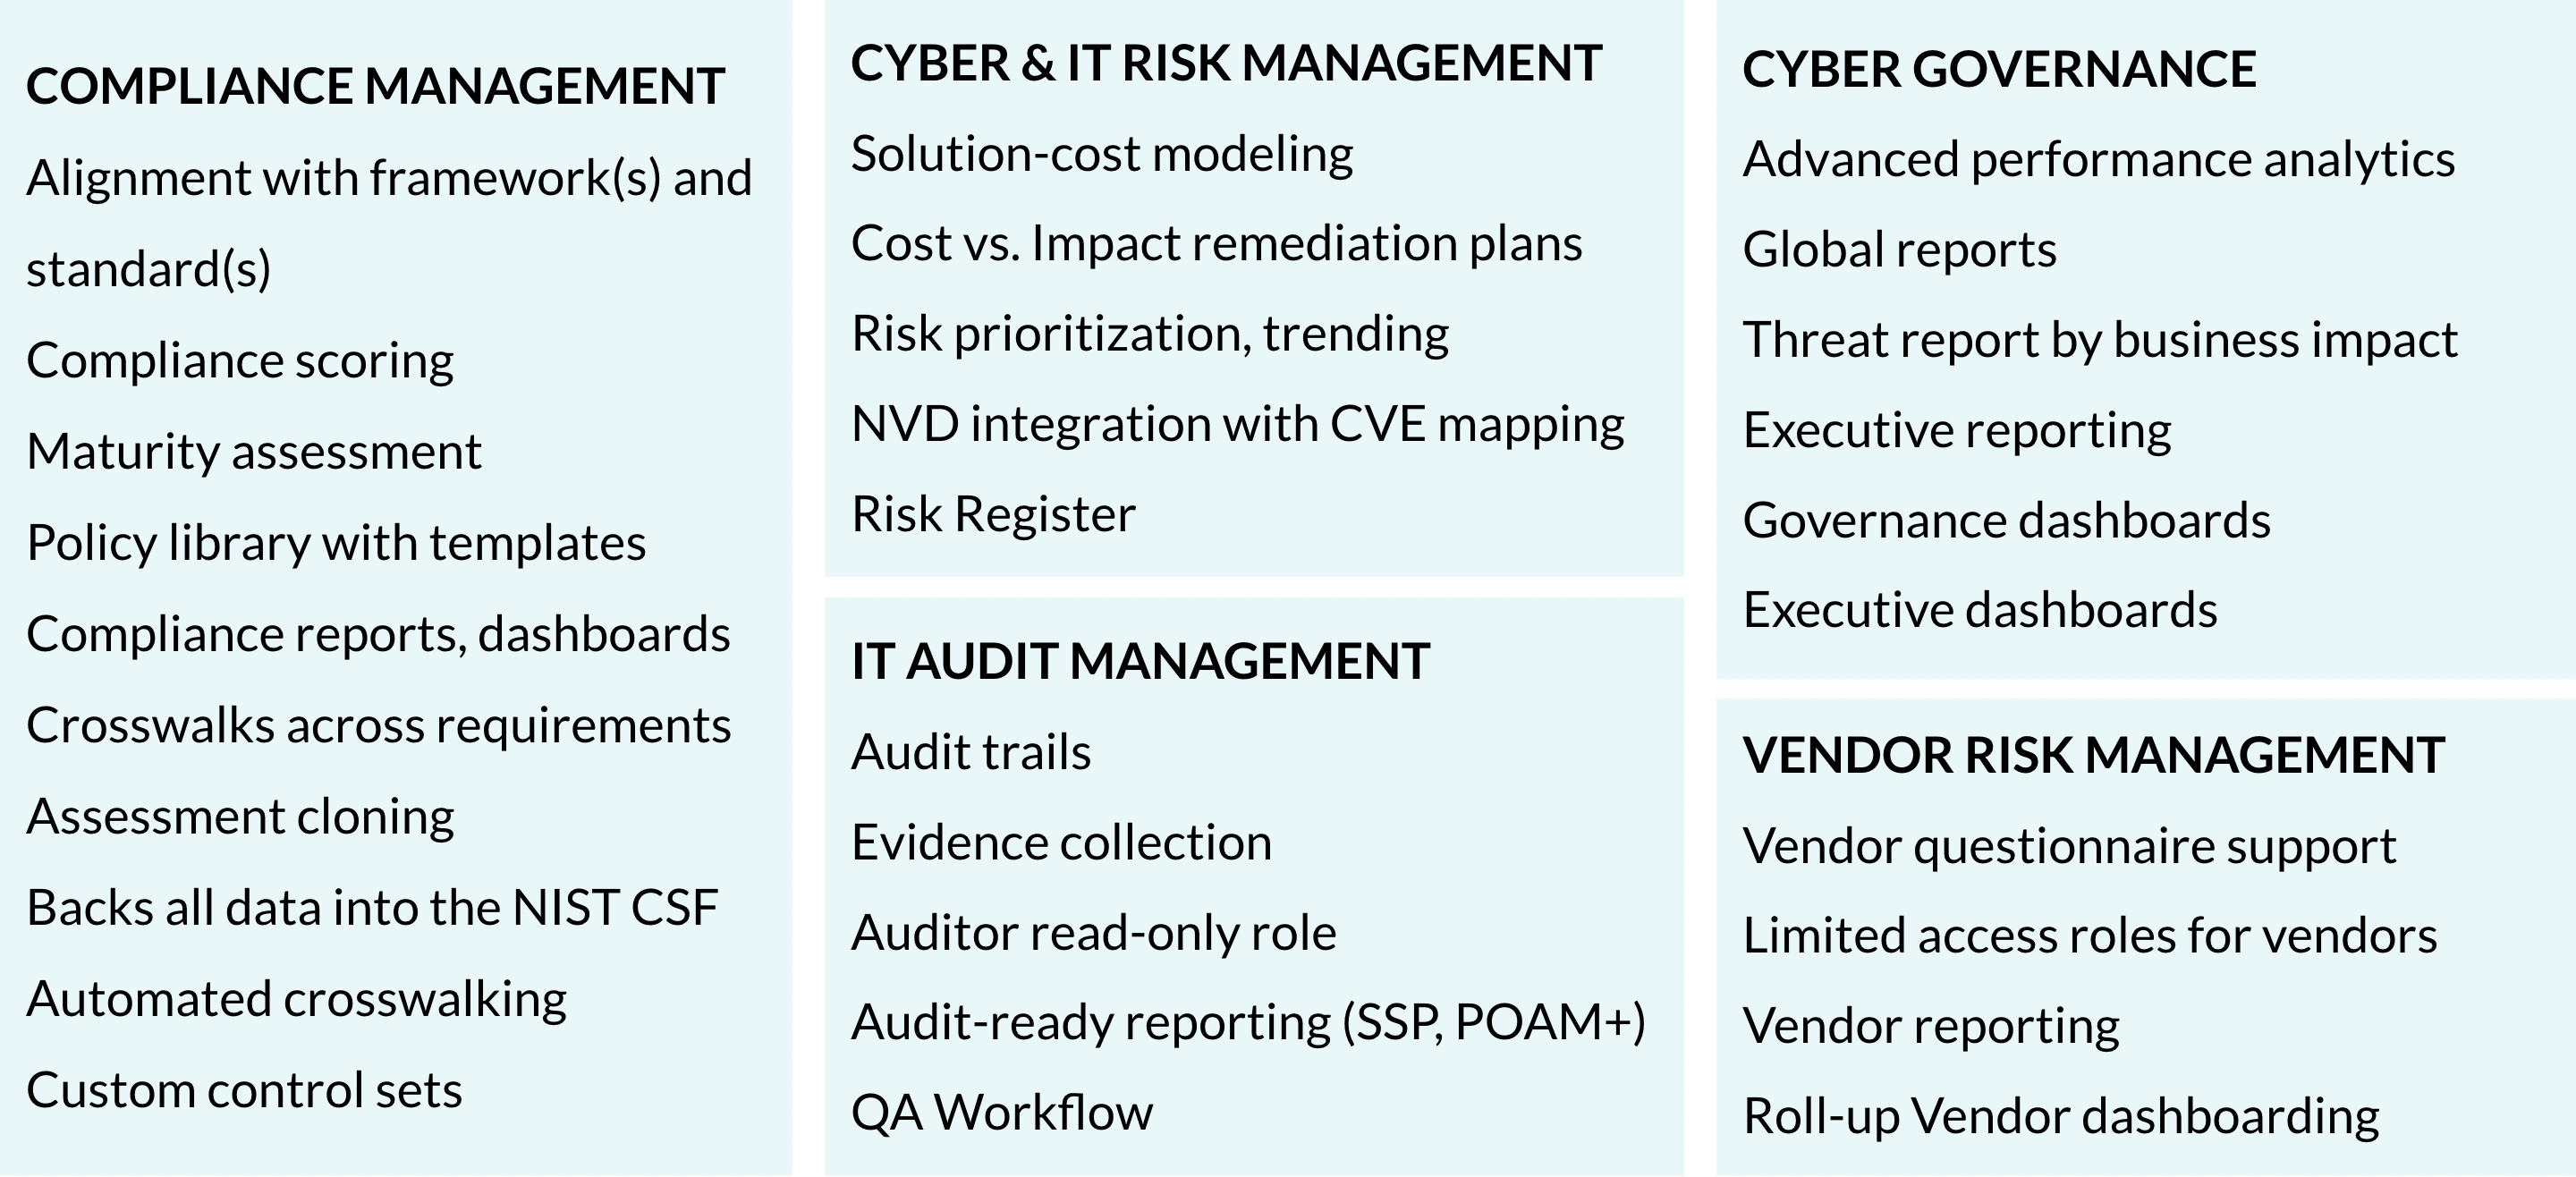 governance risk and compliance (GRC) software platform